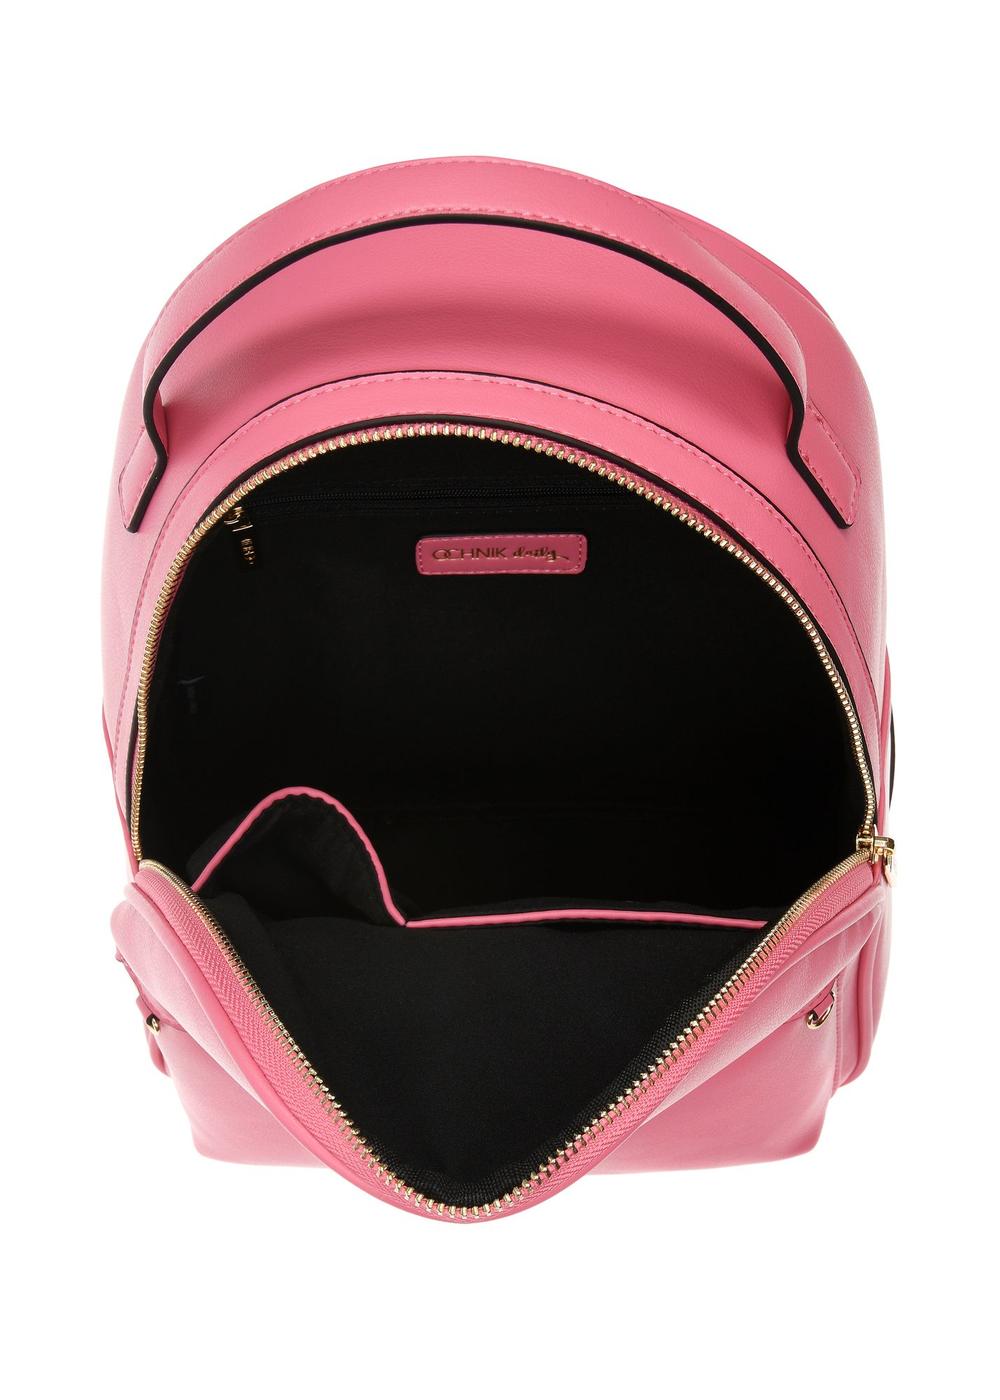 Różowy plecak damski z imitacji skóry TOREC-0920-31(W24)